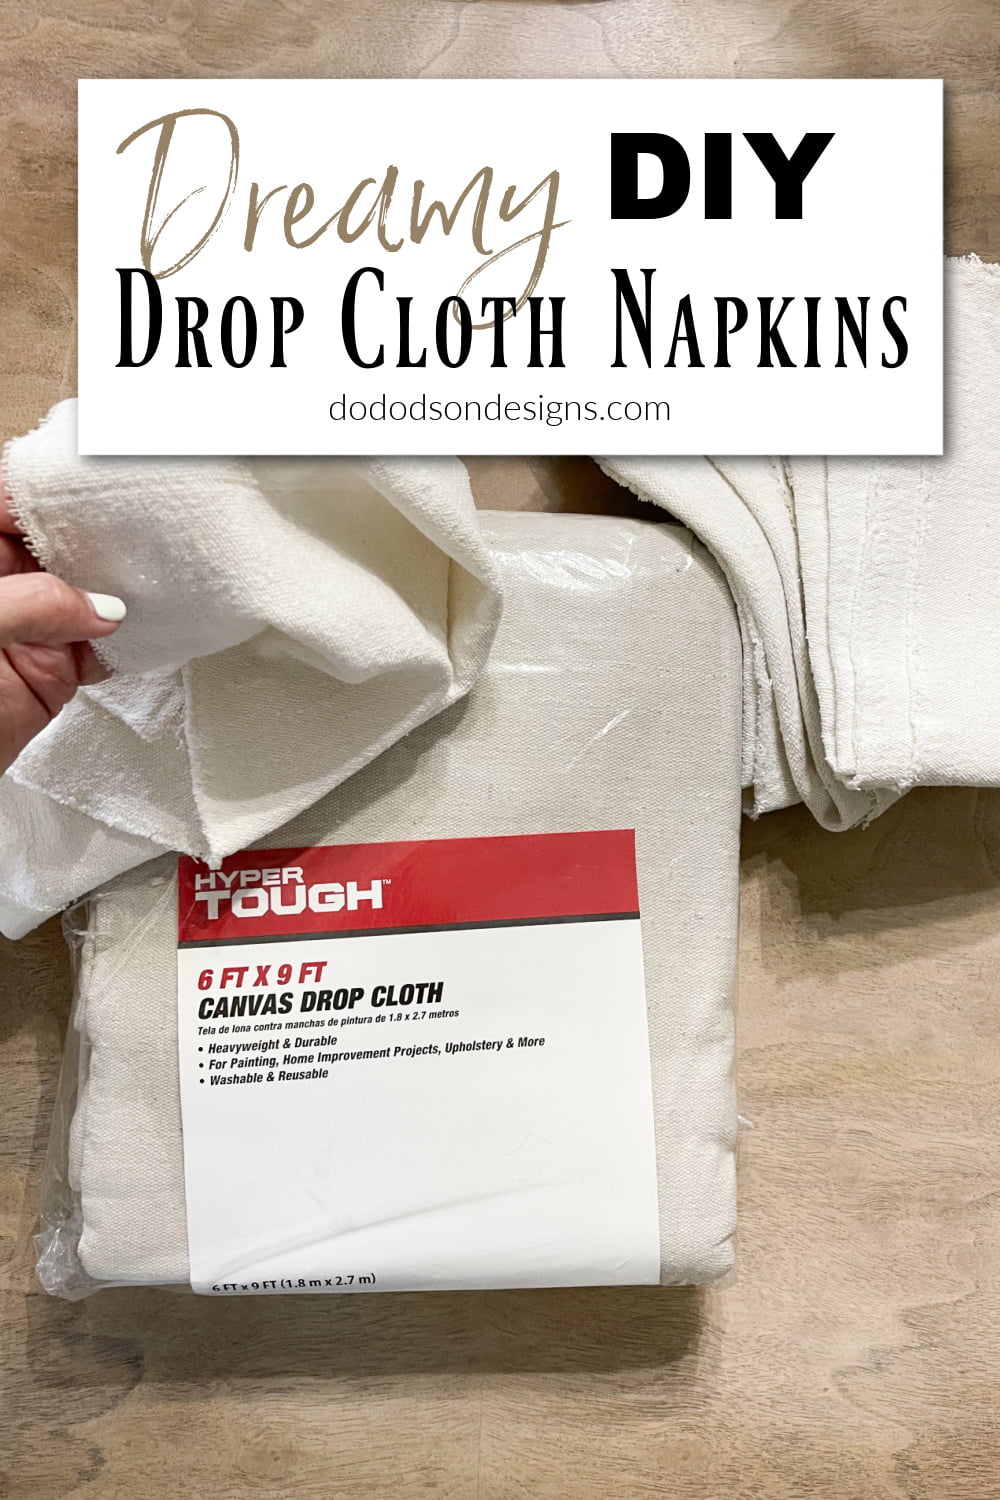 Everyday Cloth Napkins